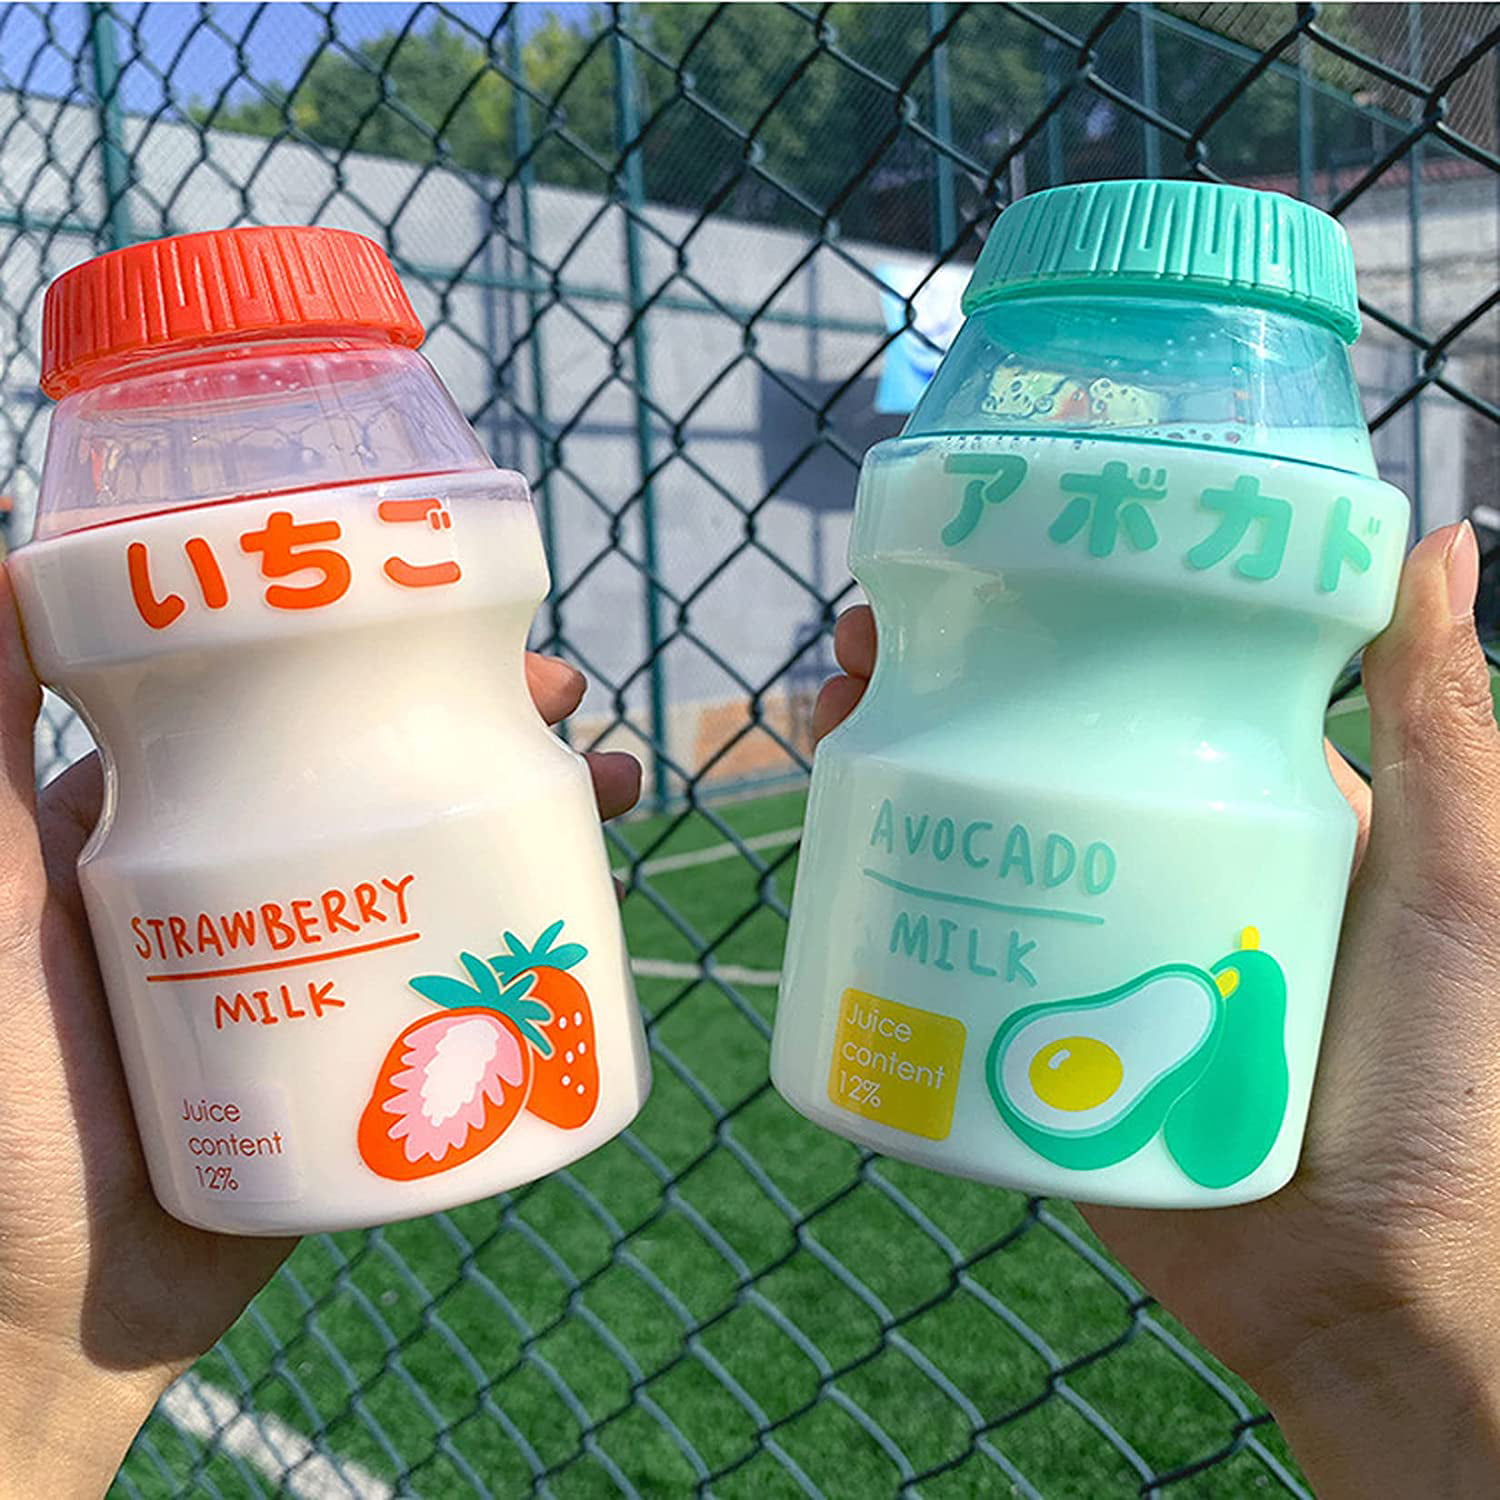 SunSunrise Drinking Bottle Cute Portable Plastic Milk Cartoon Shaker Bottle  for Kids 